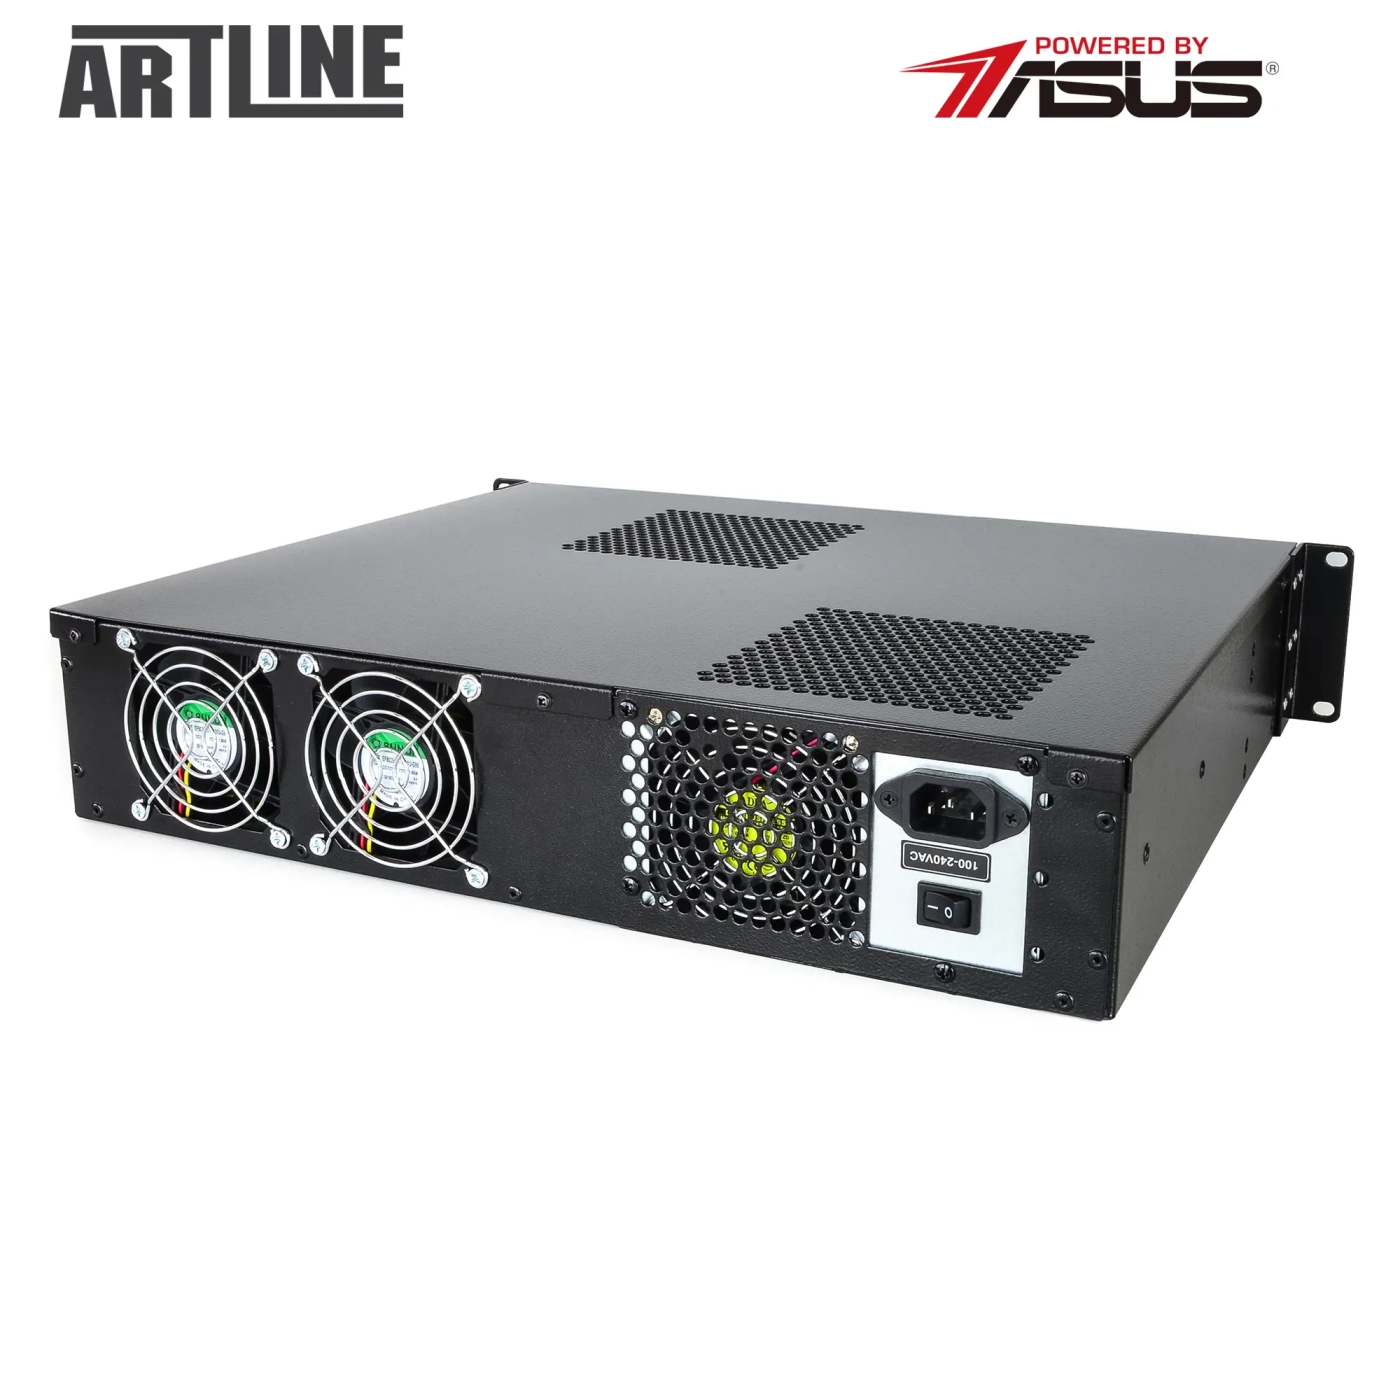 Купить Сервер ARTLINE Business R35 (R35v43) - фото 8